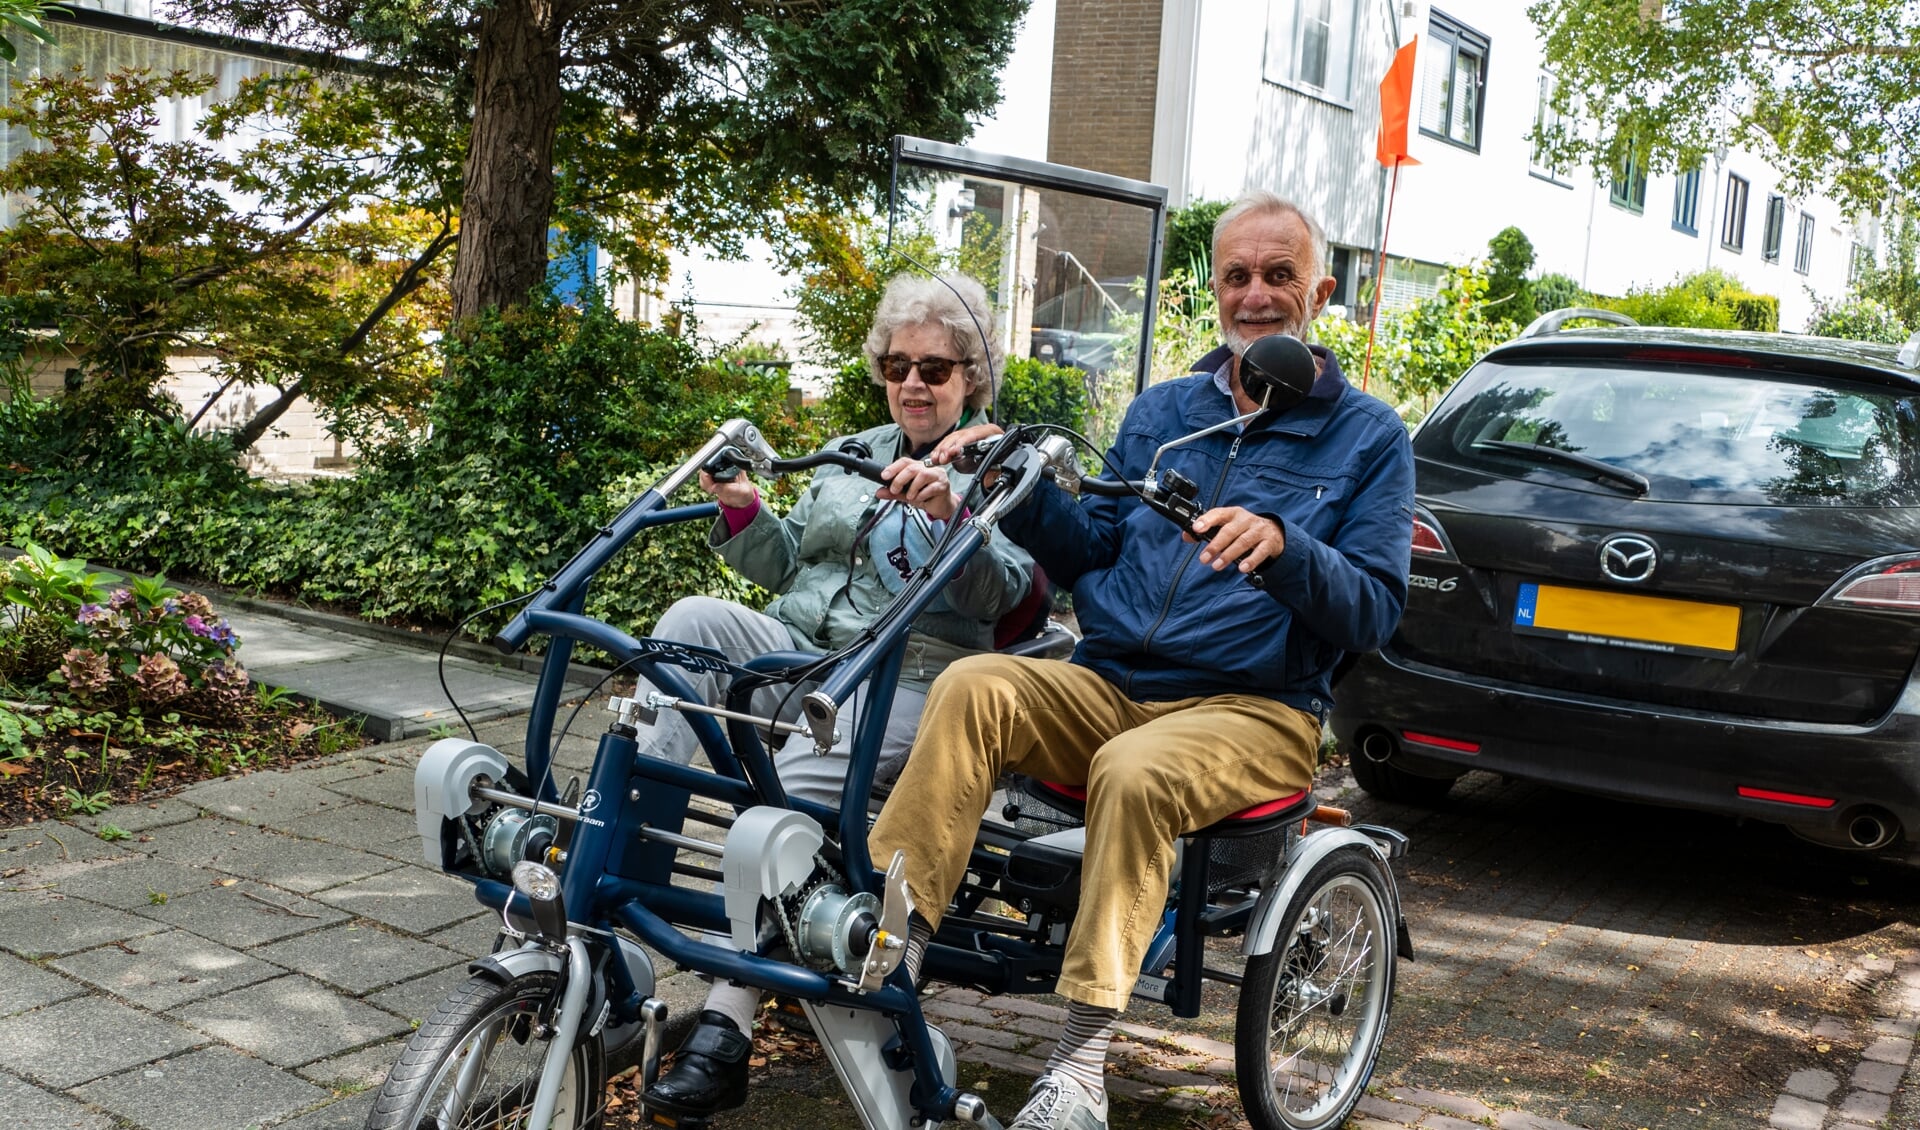 De nieuwe duofiets van de Zonnebloem Muiden & Muiderberg heeft een coronaproof scherm tussen de fietsstoeltjes, zodat er zonder mondkapje gefietst kan worden. 